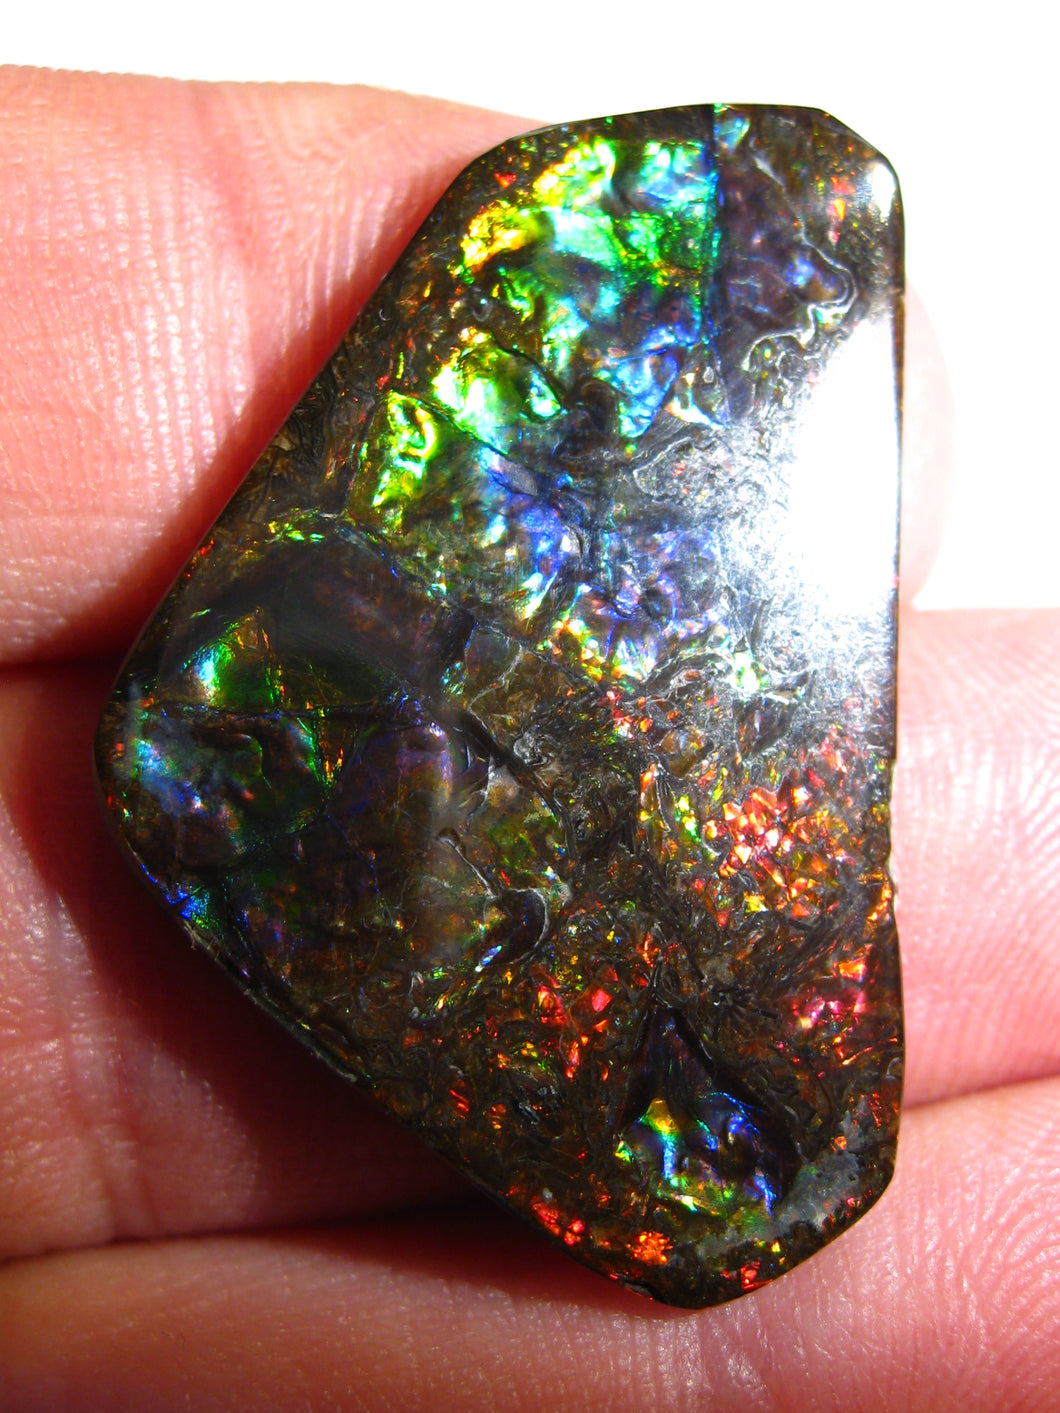 Doppelseiter Drachenschuppen Imperial Ammolith/Ammolite Stein mit Vorschau Video - Repps-Opal